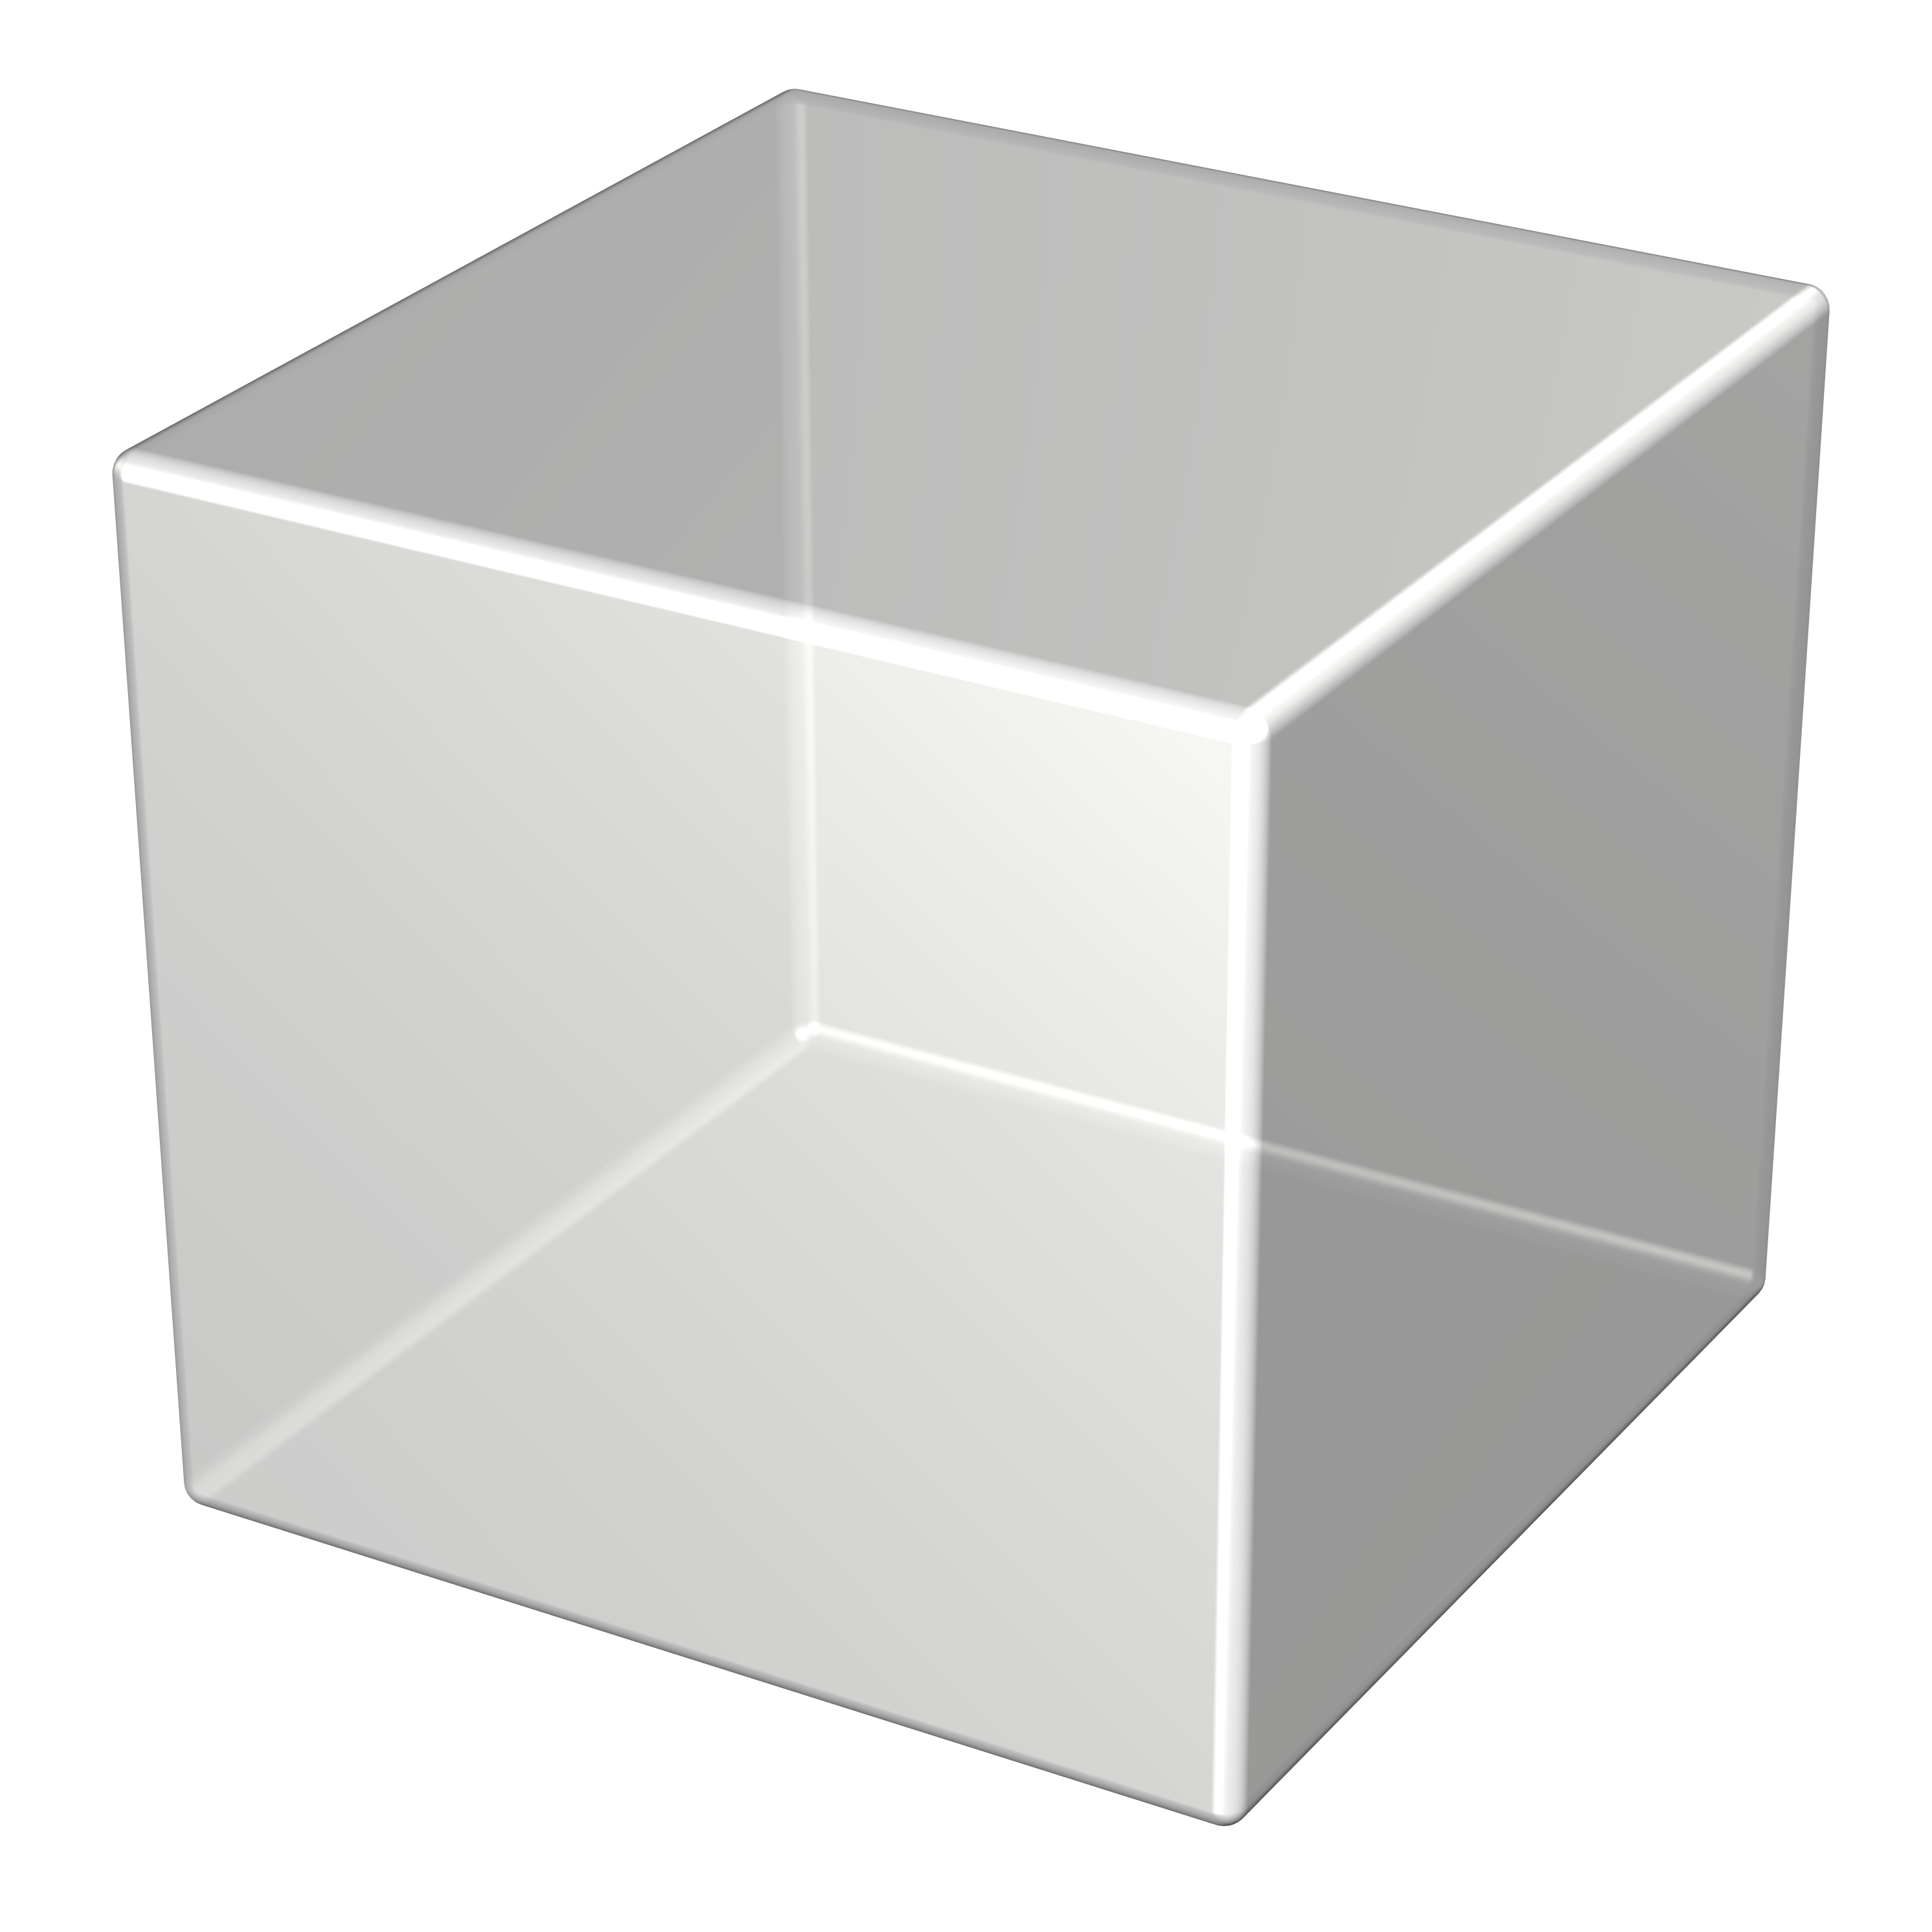 Reg kz. Куб. Объемная фигура куб. Объемный квадрат. Трёхмерный куб.